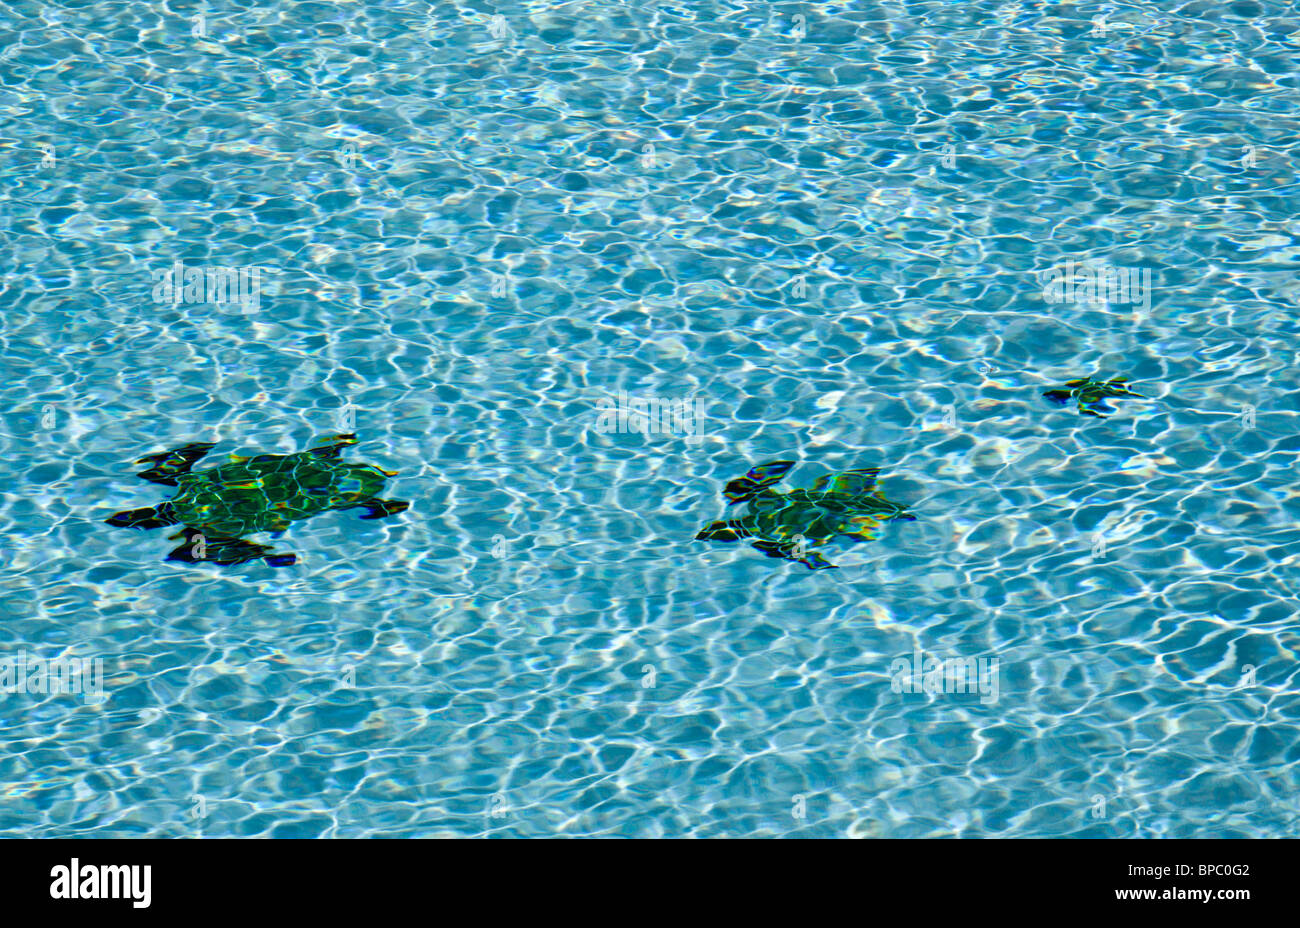 Sol carrelé trois formes de tortues sur le plancher d'une piscine bleu avec ondulations Banque D'Images